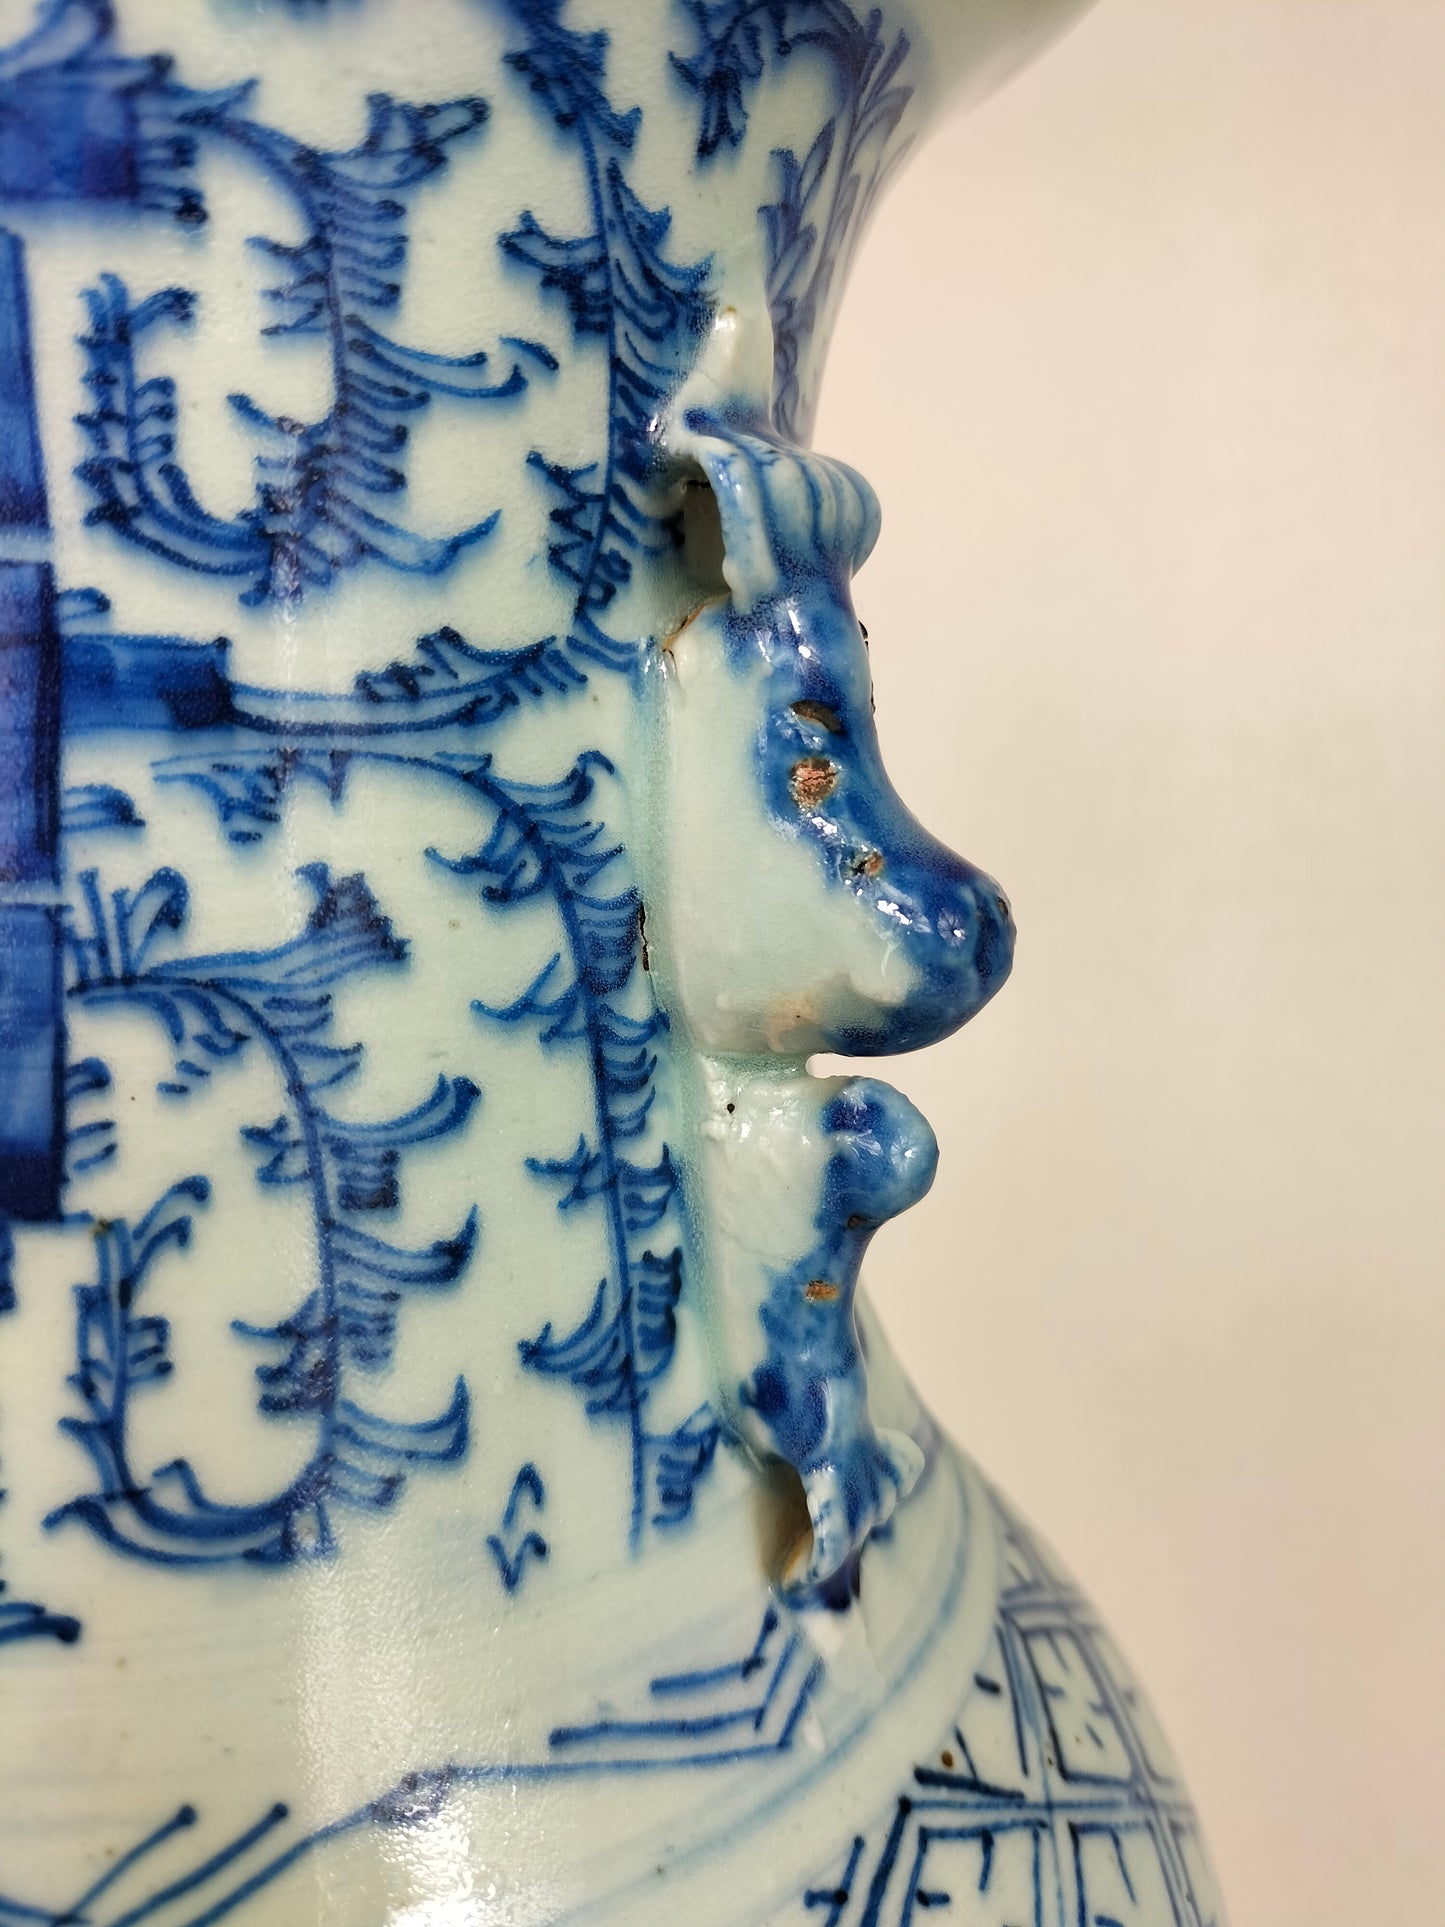 Bình hạnh phúc đôi cổ Trung Quốc // Xanh trắng - Nhà Thanh - thế kỷ 19